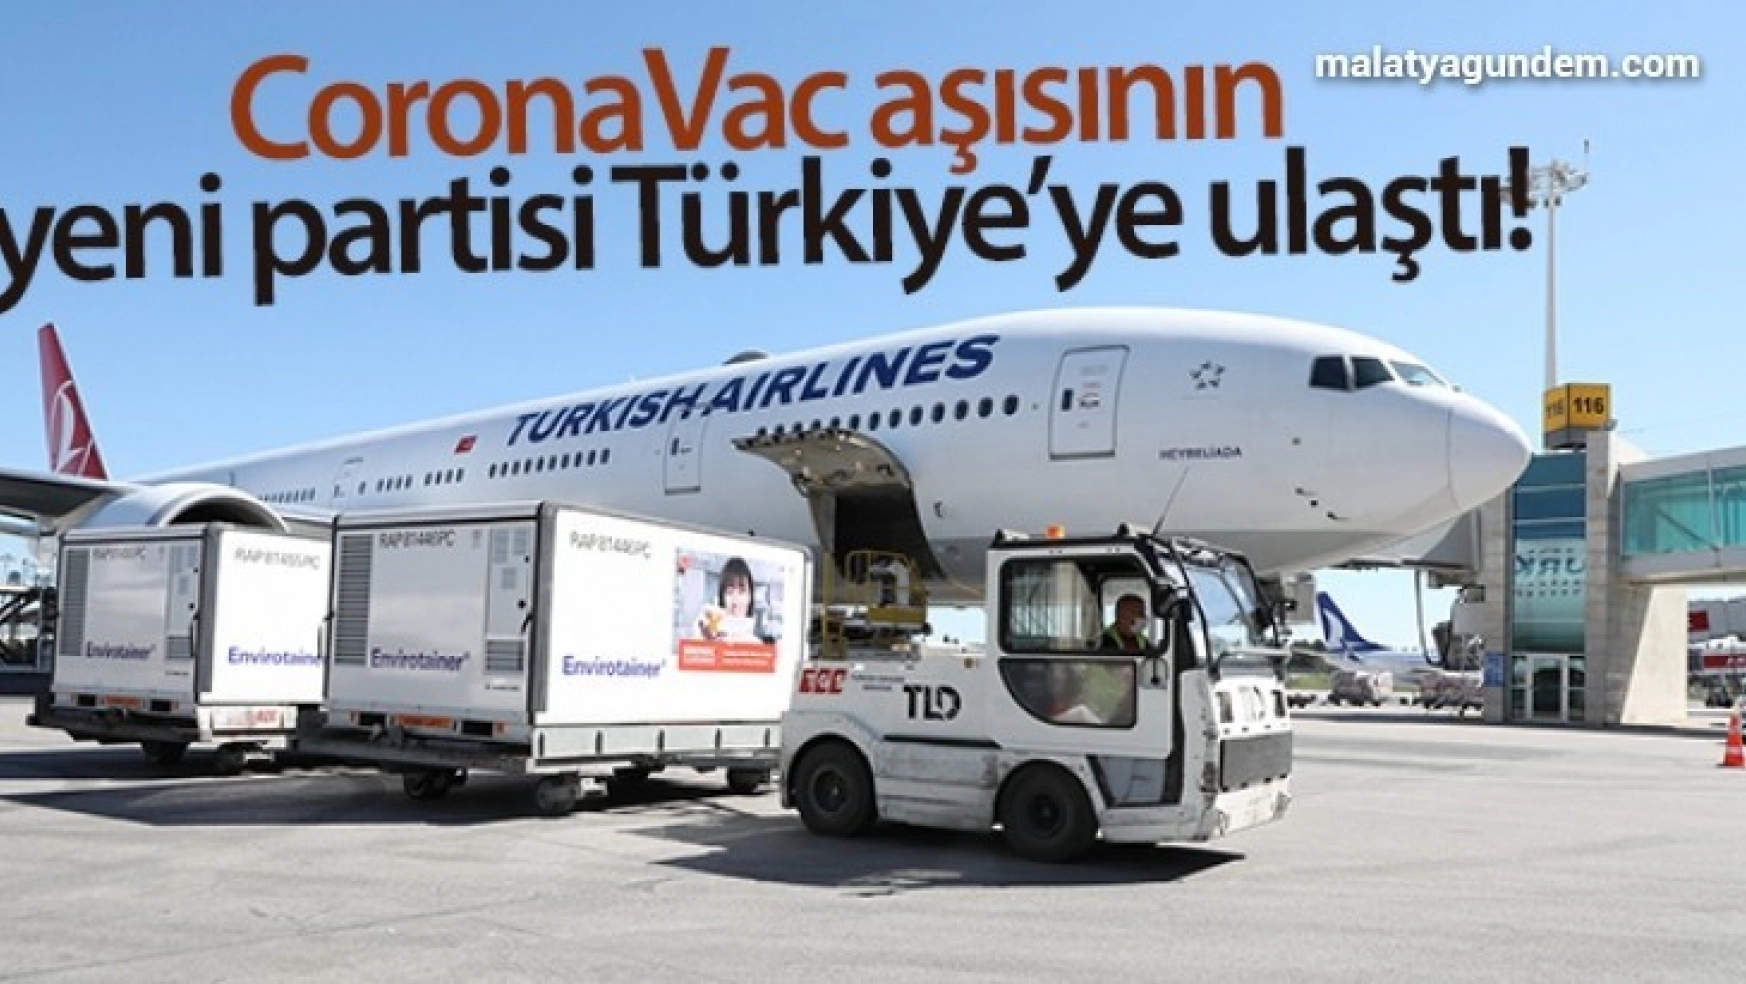 CoronaVac aşısının yeni partisi Türkiye'ye ulaştı